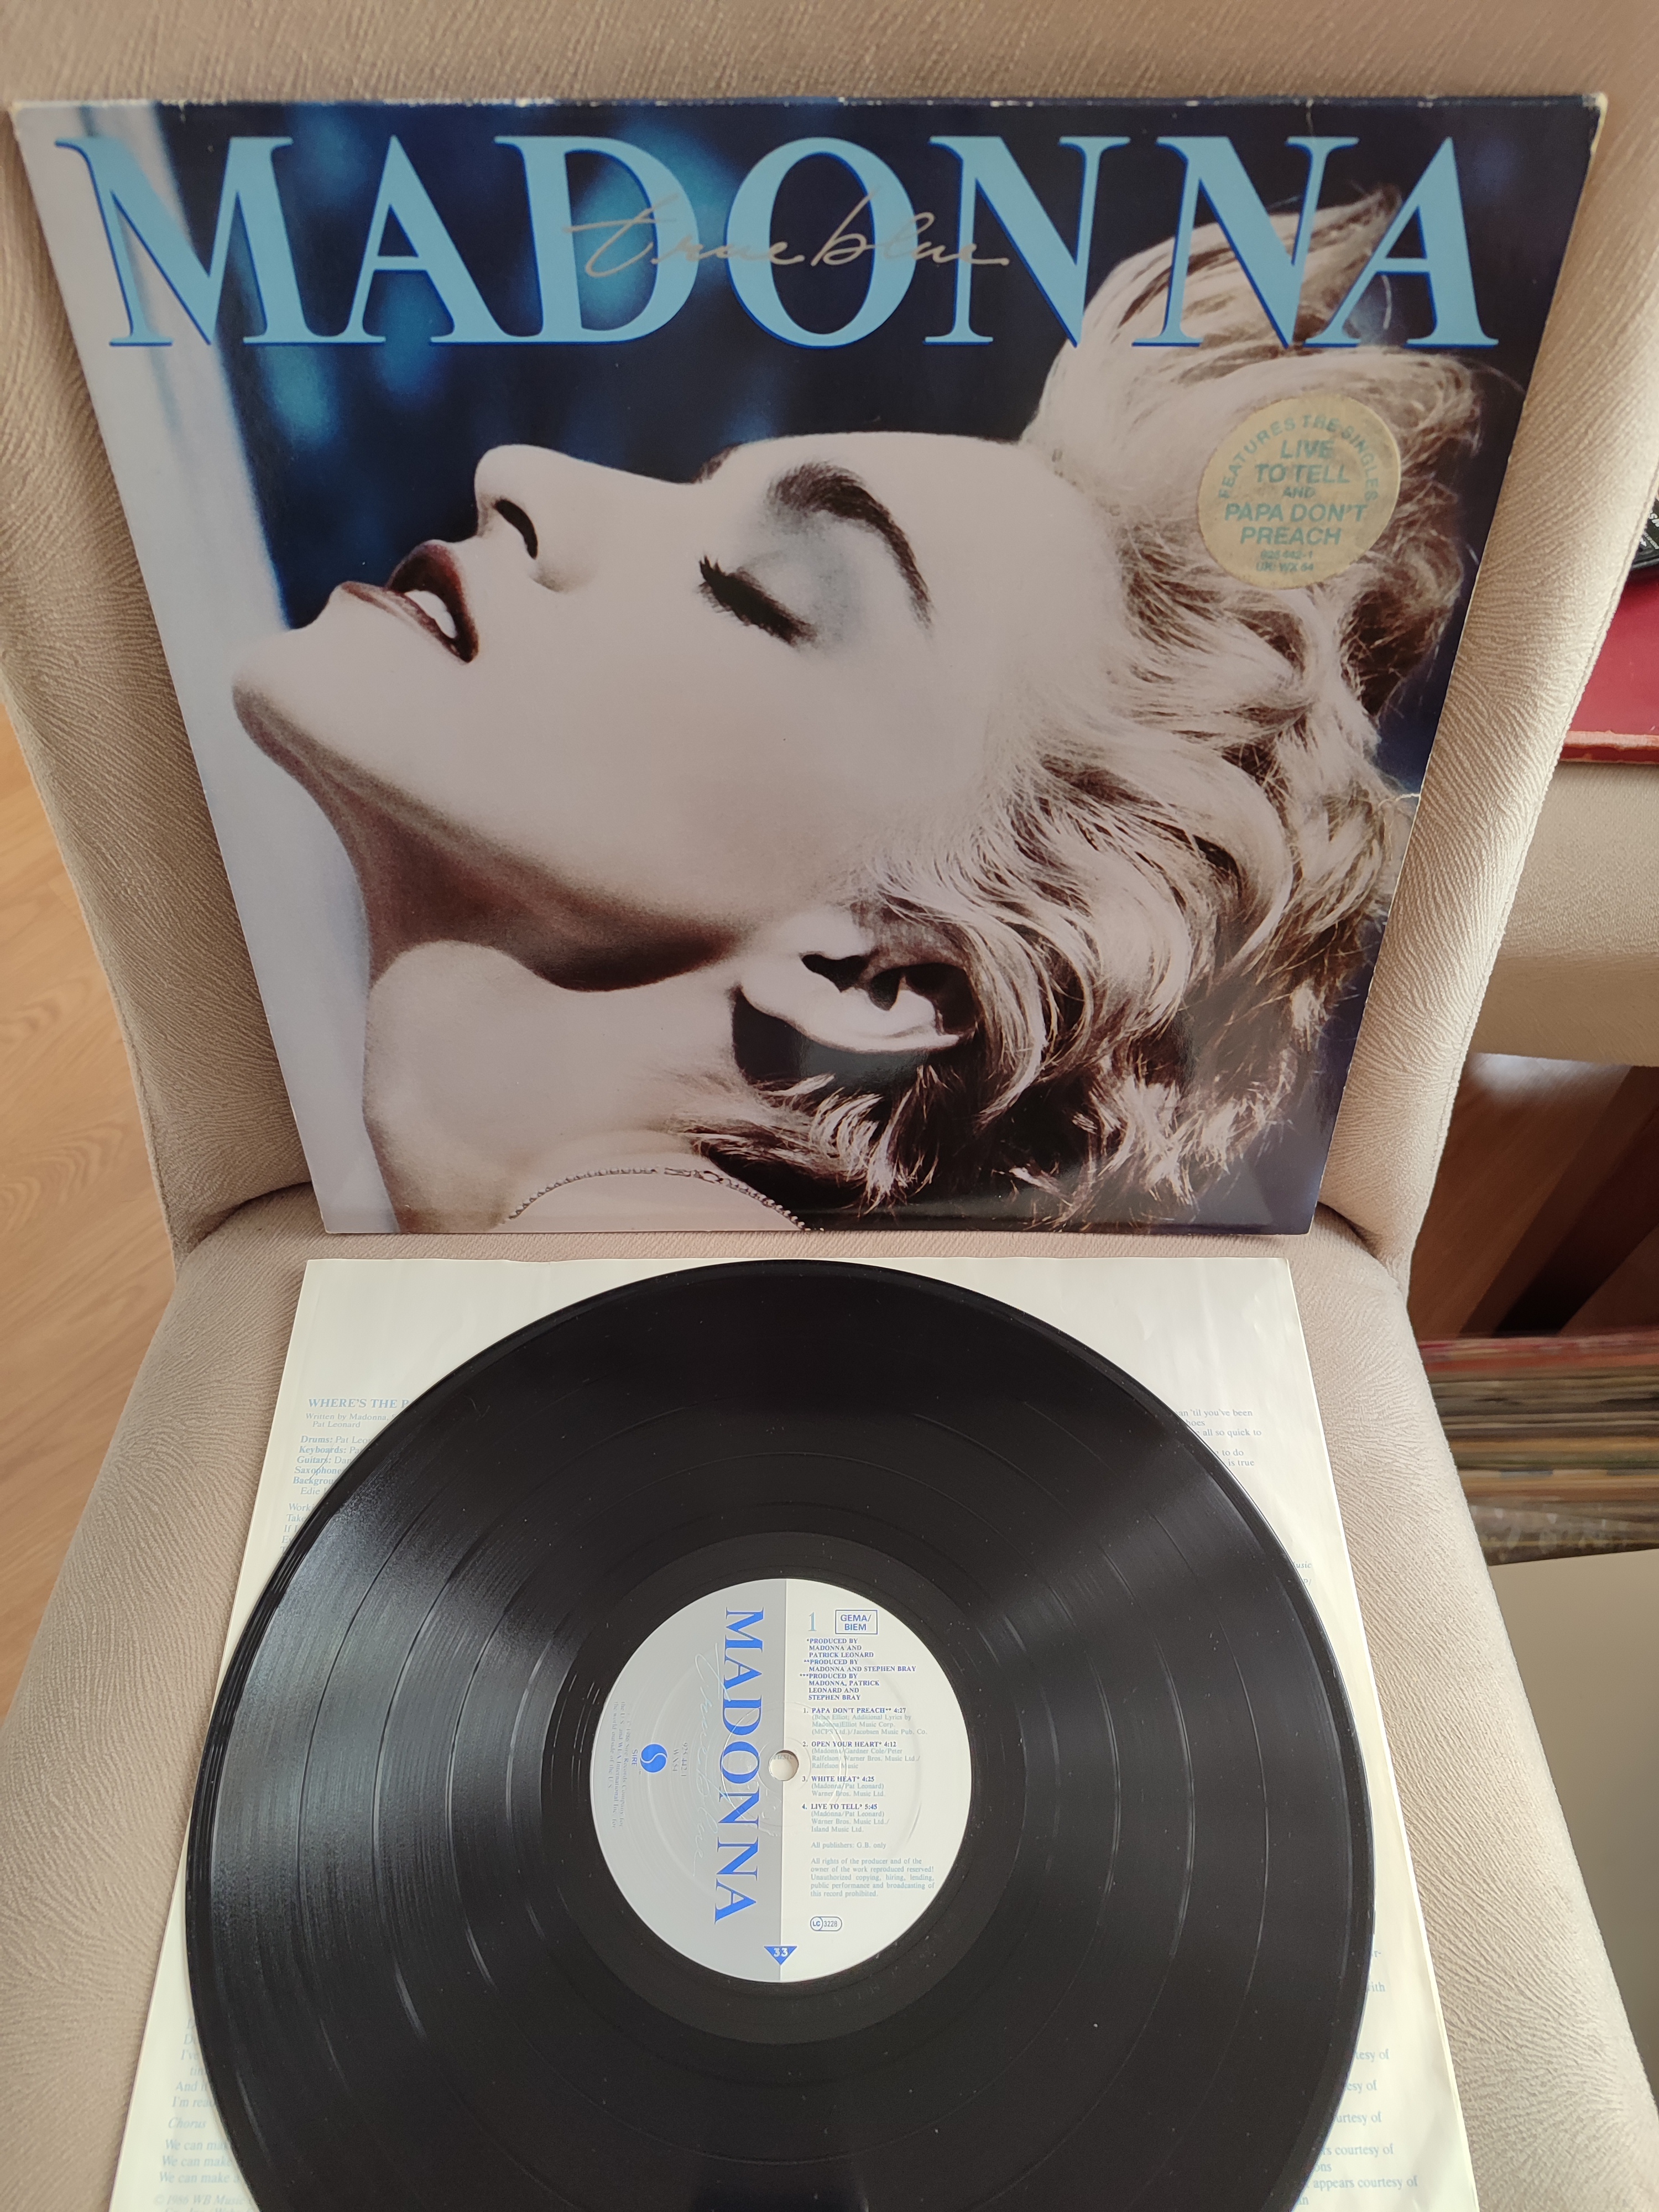 MADONNA - True Blue - Almanya 1986 Basım Albüm - 33 lük LP Plak 2. EL